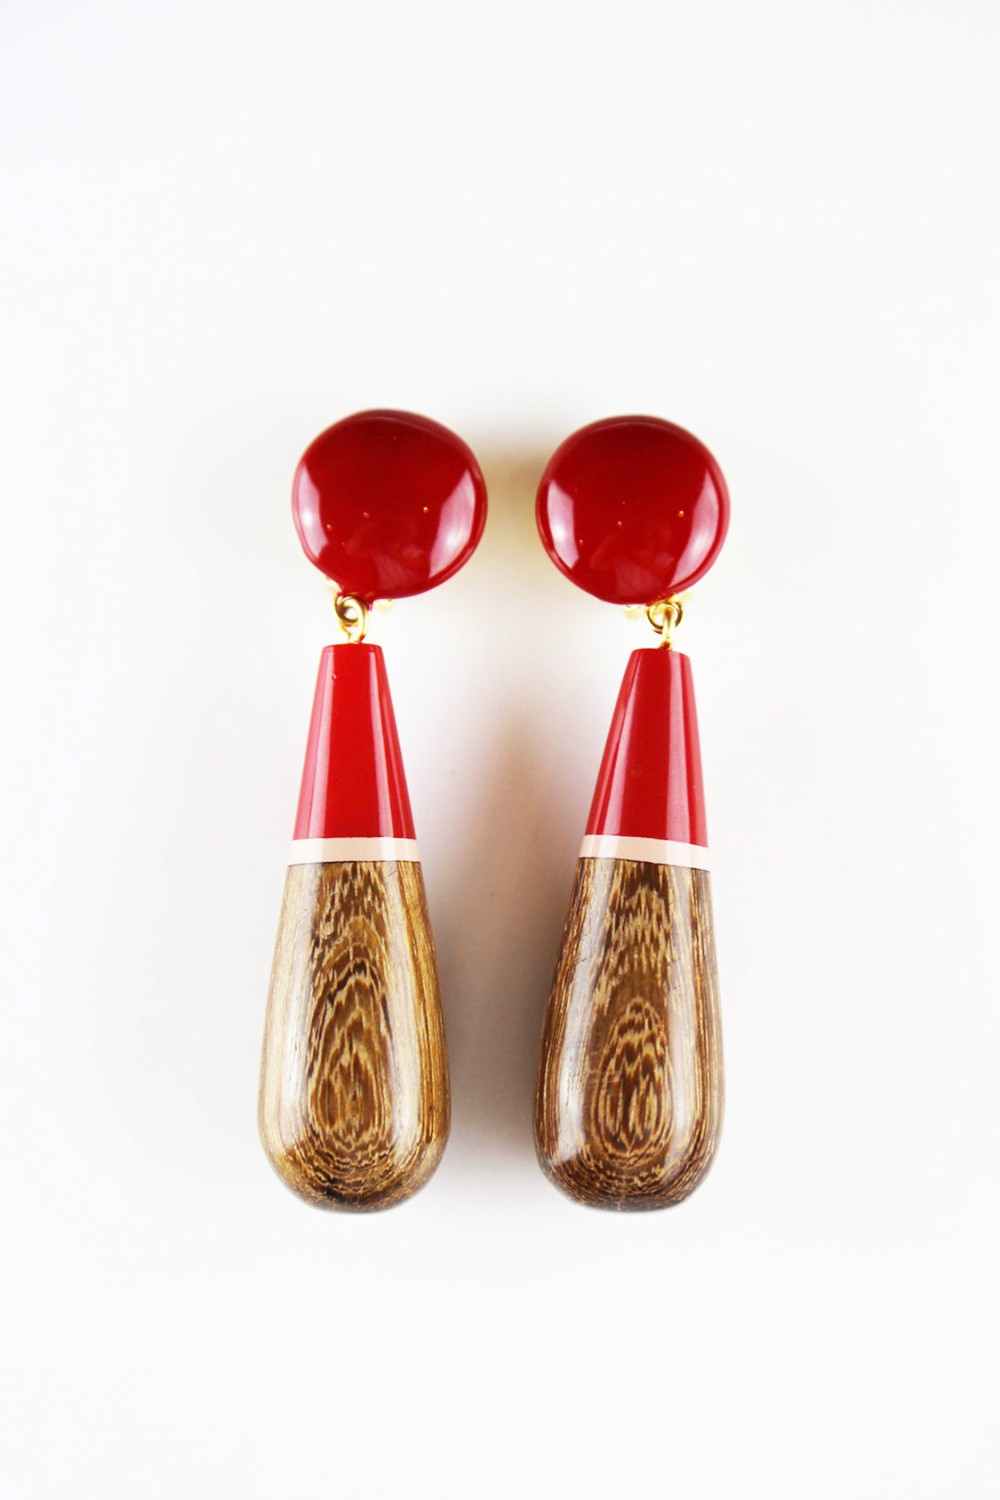 shop Marni Sales Bijoux: Orecchini Marni in legno pendenti, tenuti da una clip tonda, color rosso e marrone, lunghezza 8 cm, clip posteriore.  number 728